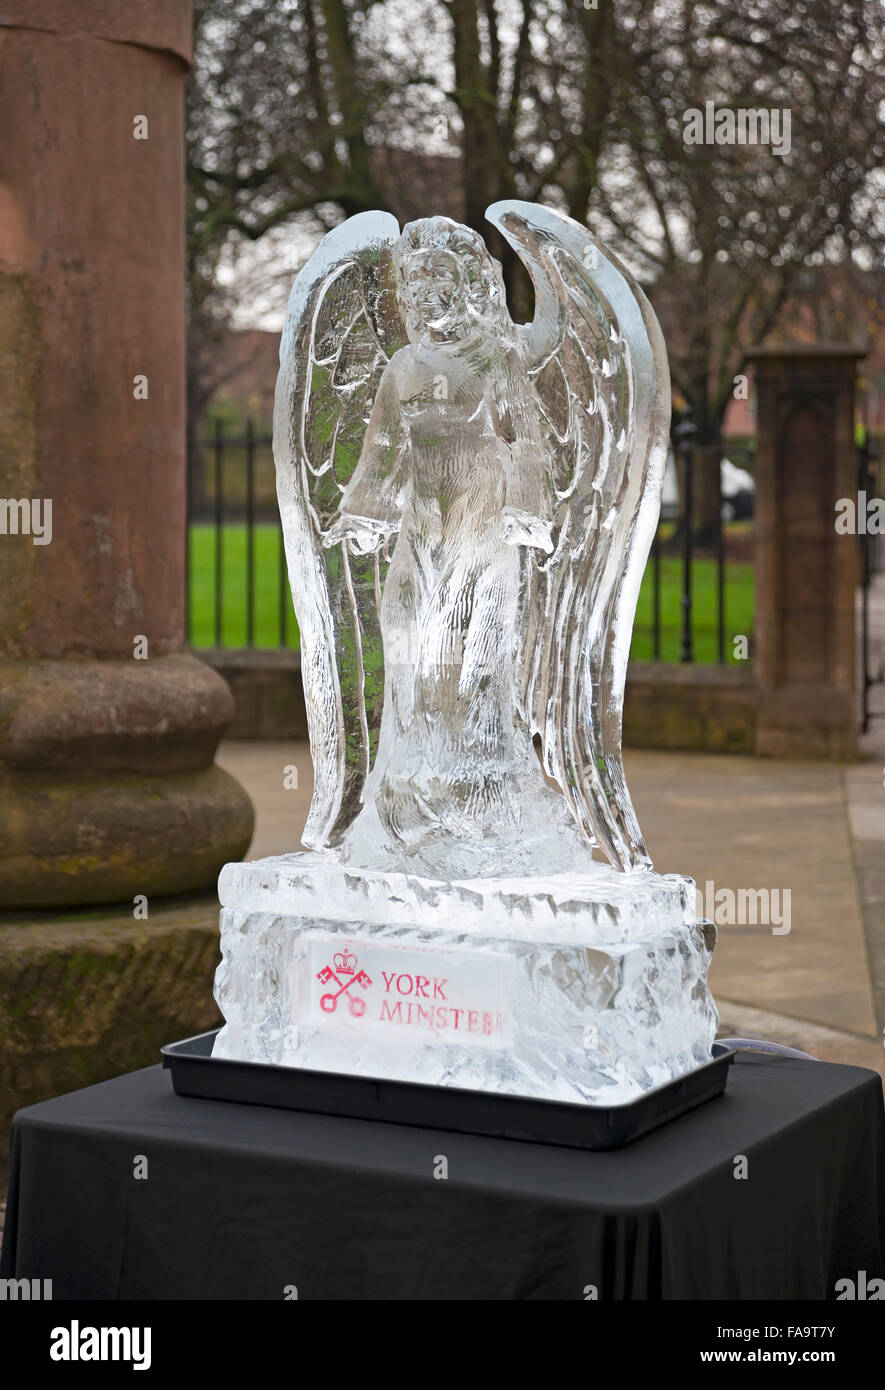 Sculpture sur glace sculpture sculpture d'un ange sur la piste de glace en hiver York North Yorkshire Angleterre Royaume-Uni GB Grande-Bretagne Banque D'Images